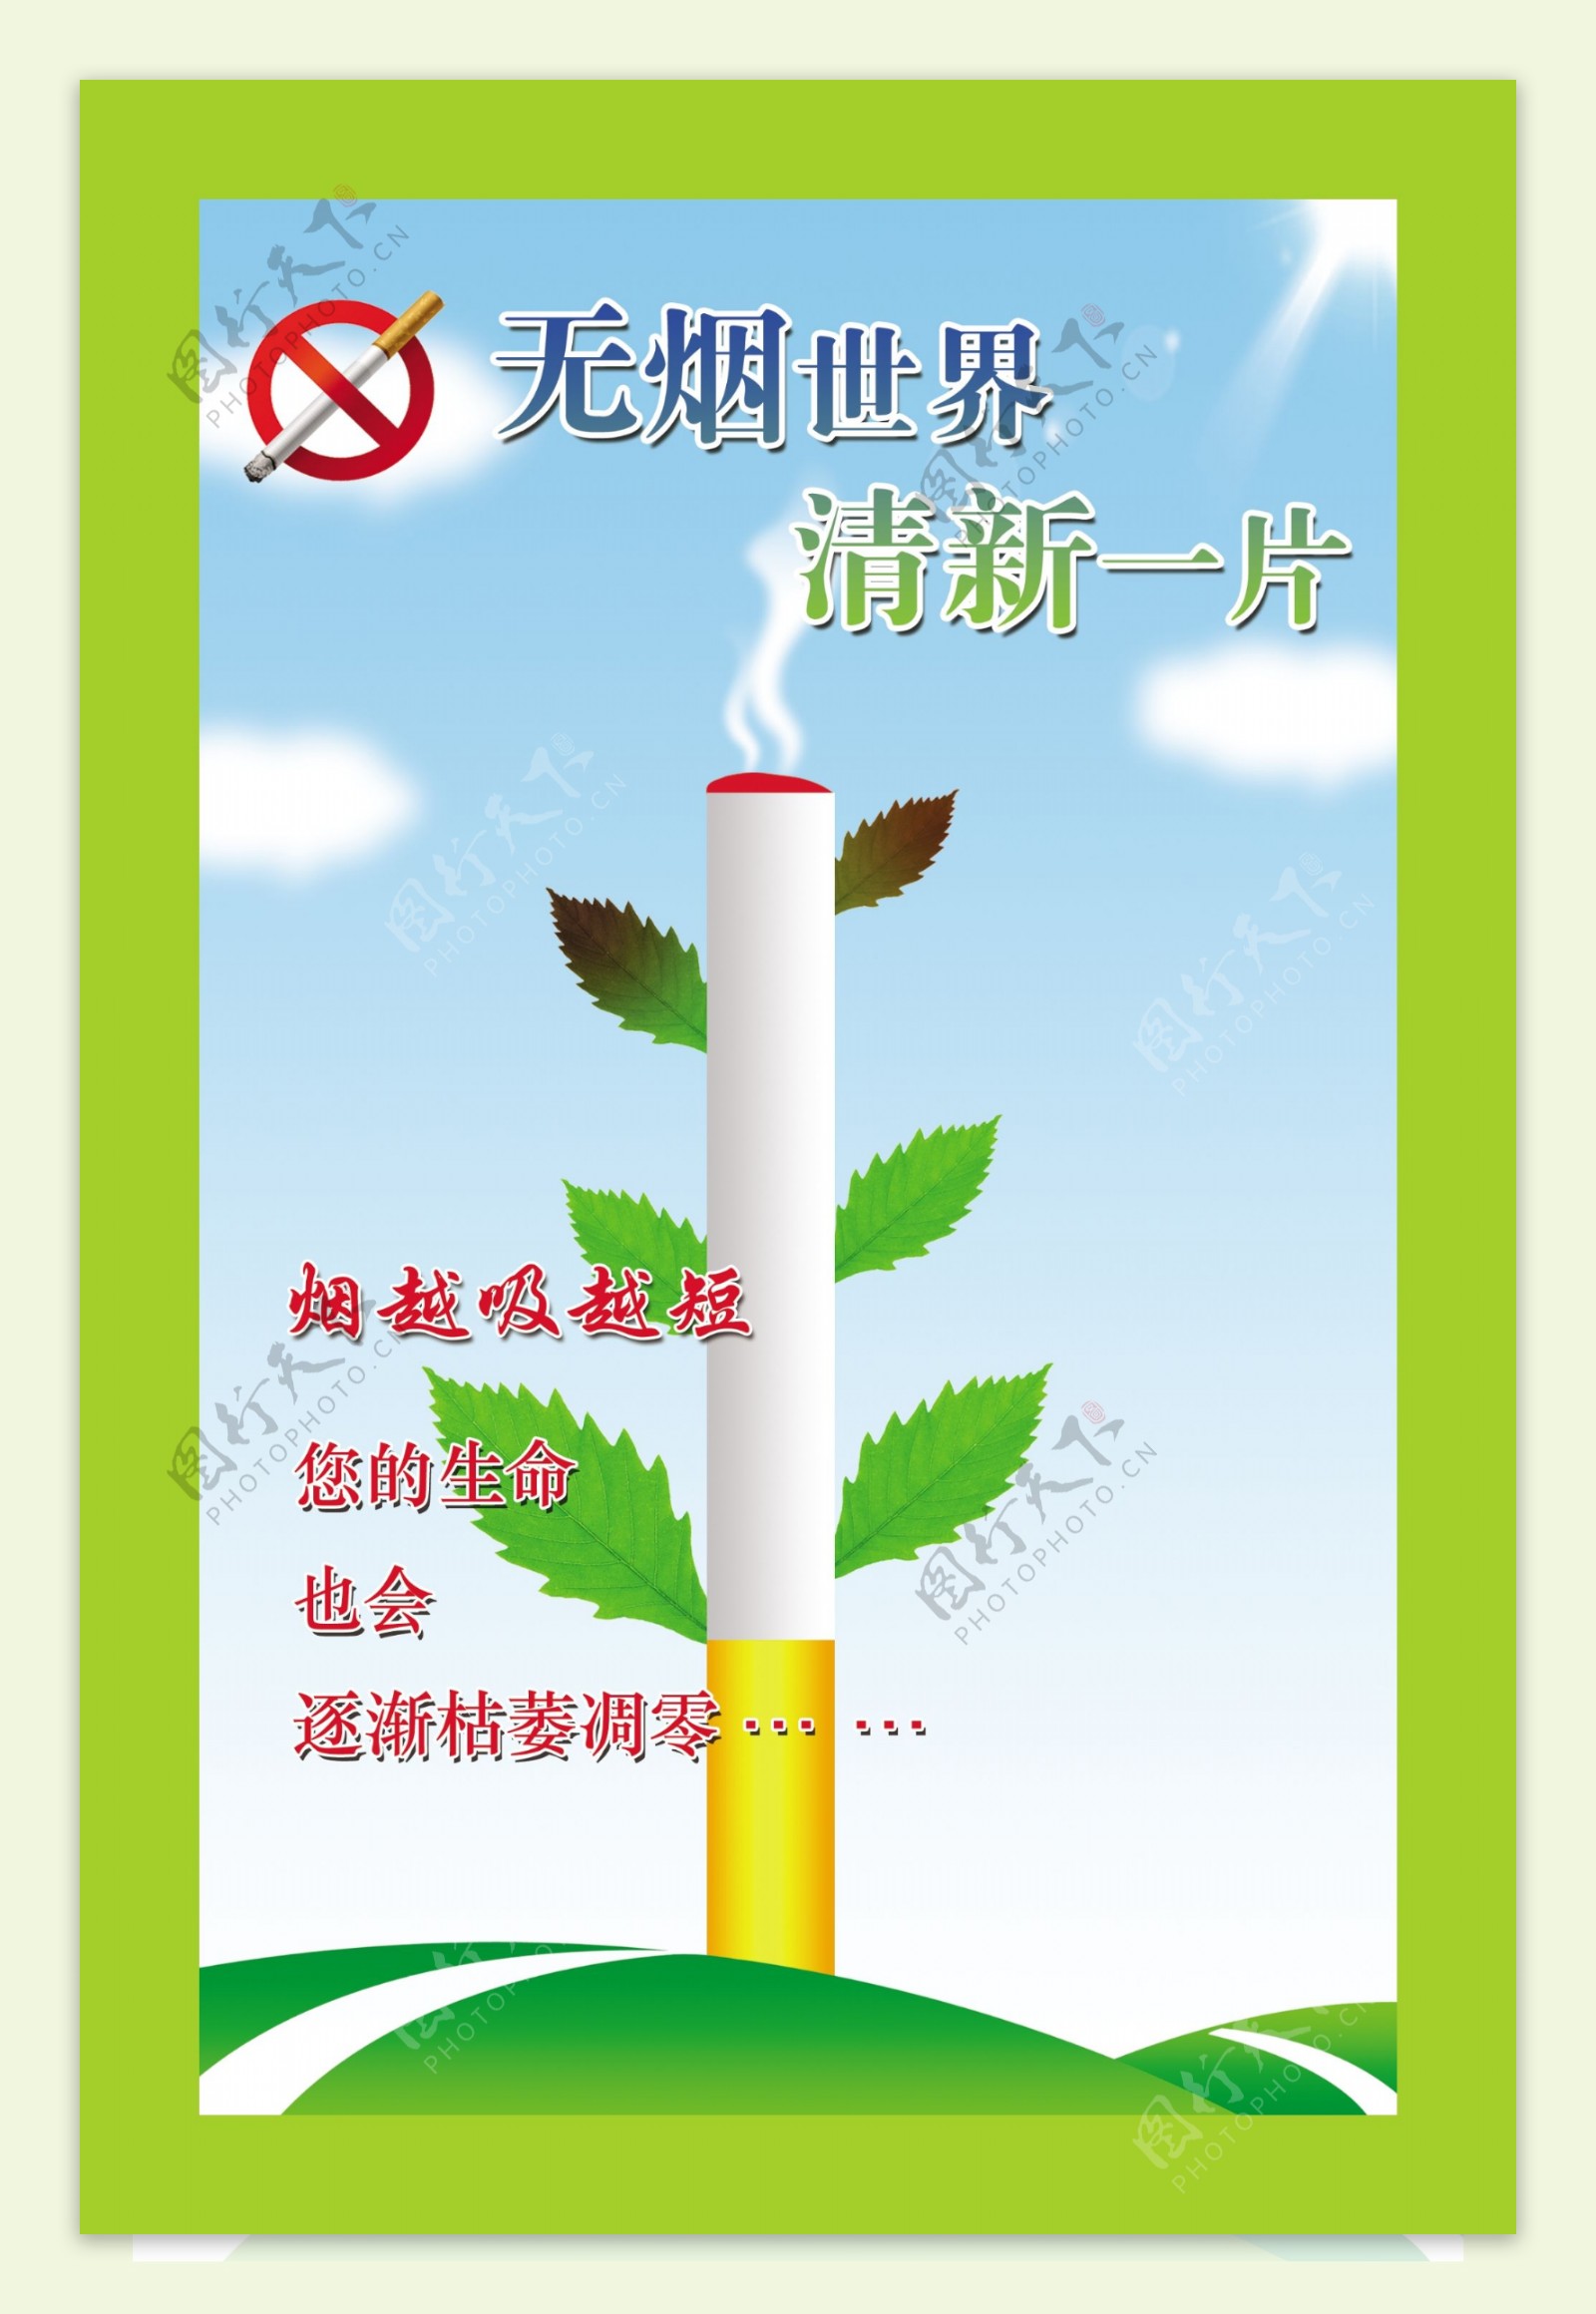 禁止吸烟宣传画